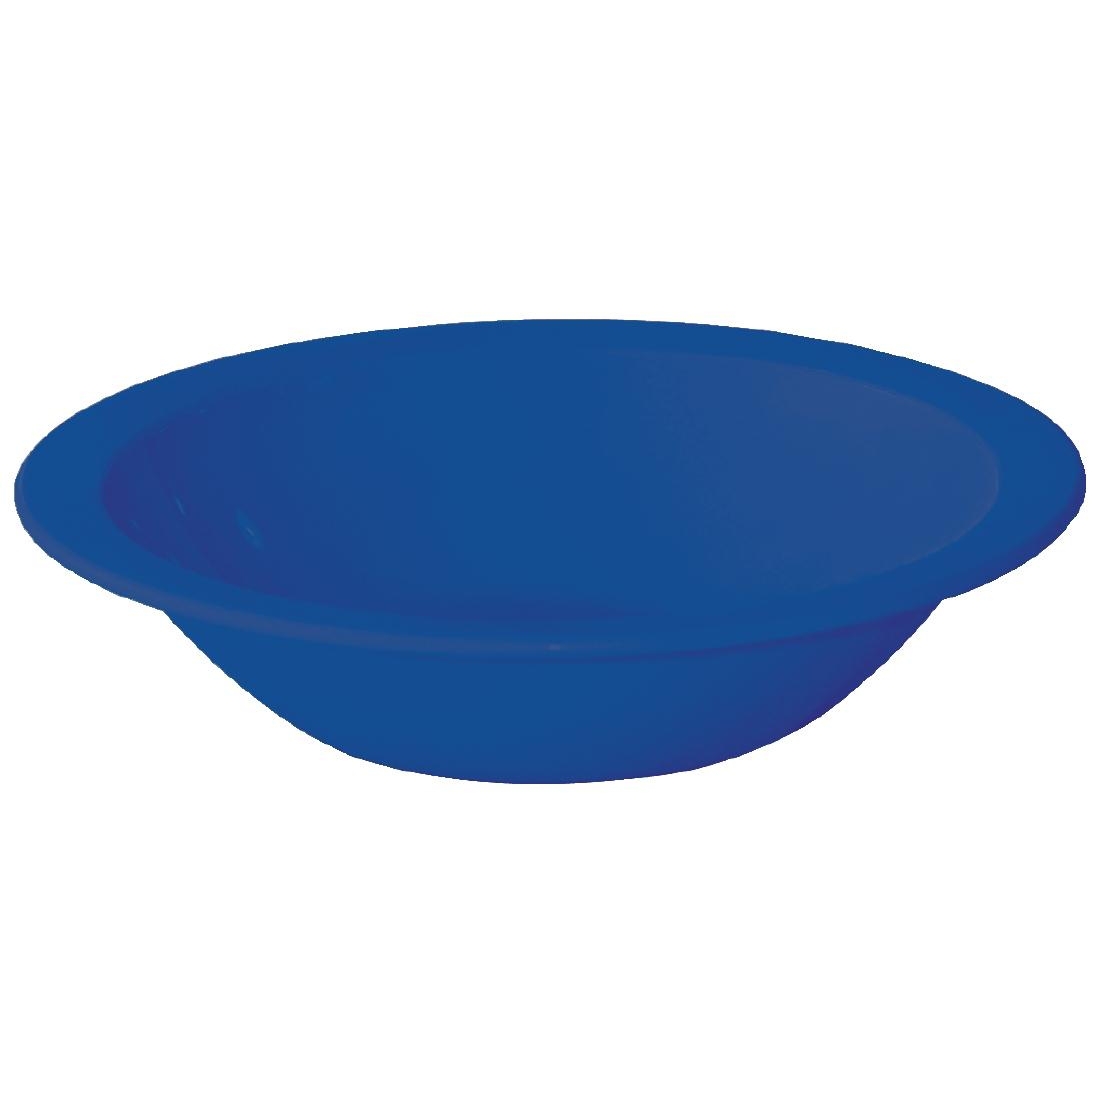 Kristallon Polycarbonate Bowls Blue 172mm